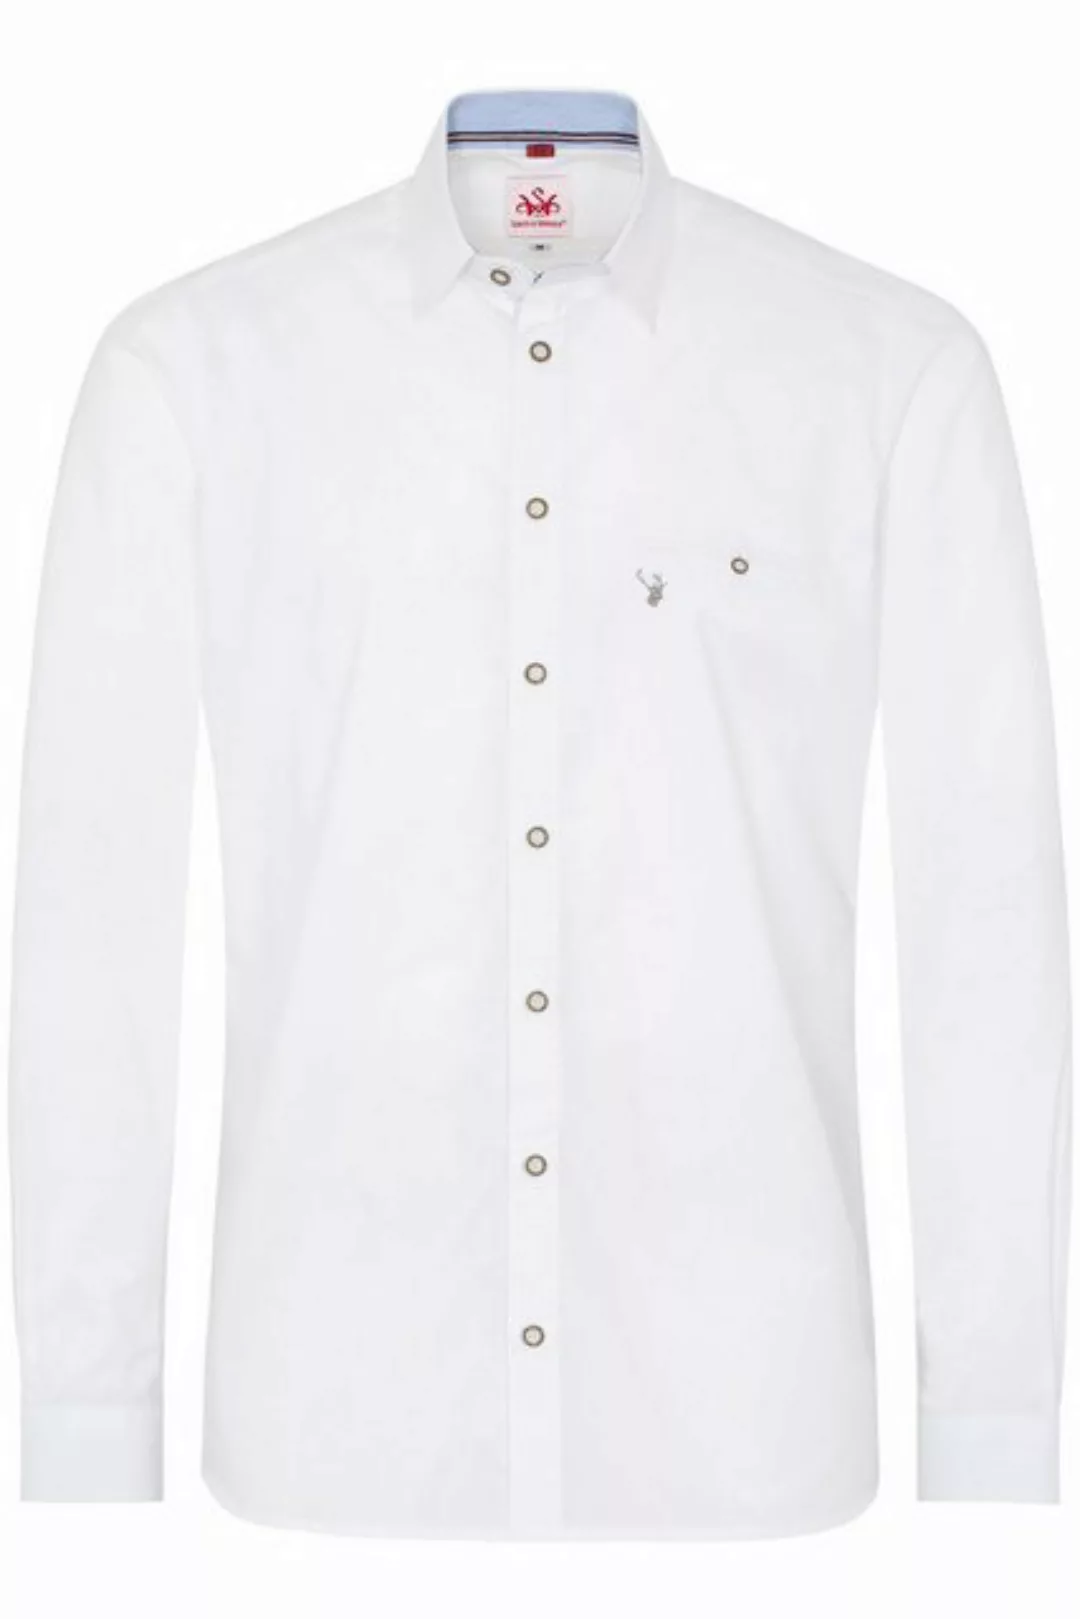 Spieth & Wensky Trachtenhemd Trachtenhemd - PERDIX - weiß/hellblau, weiß/ta günstig online kaufen